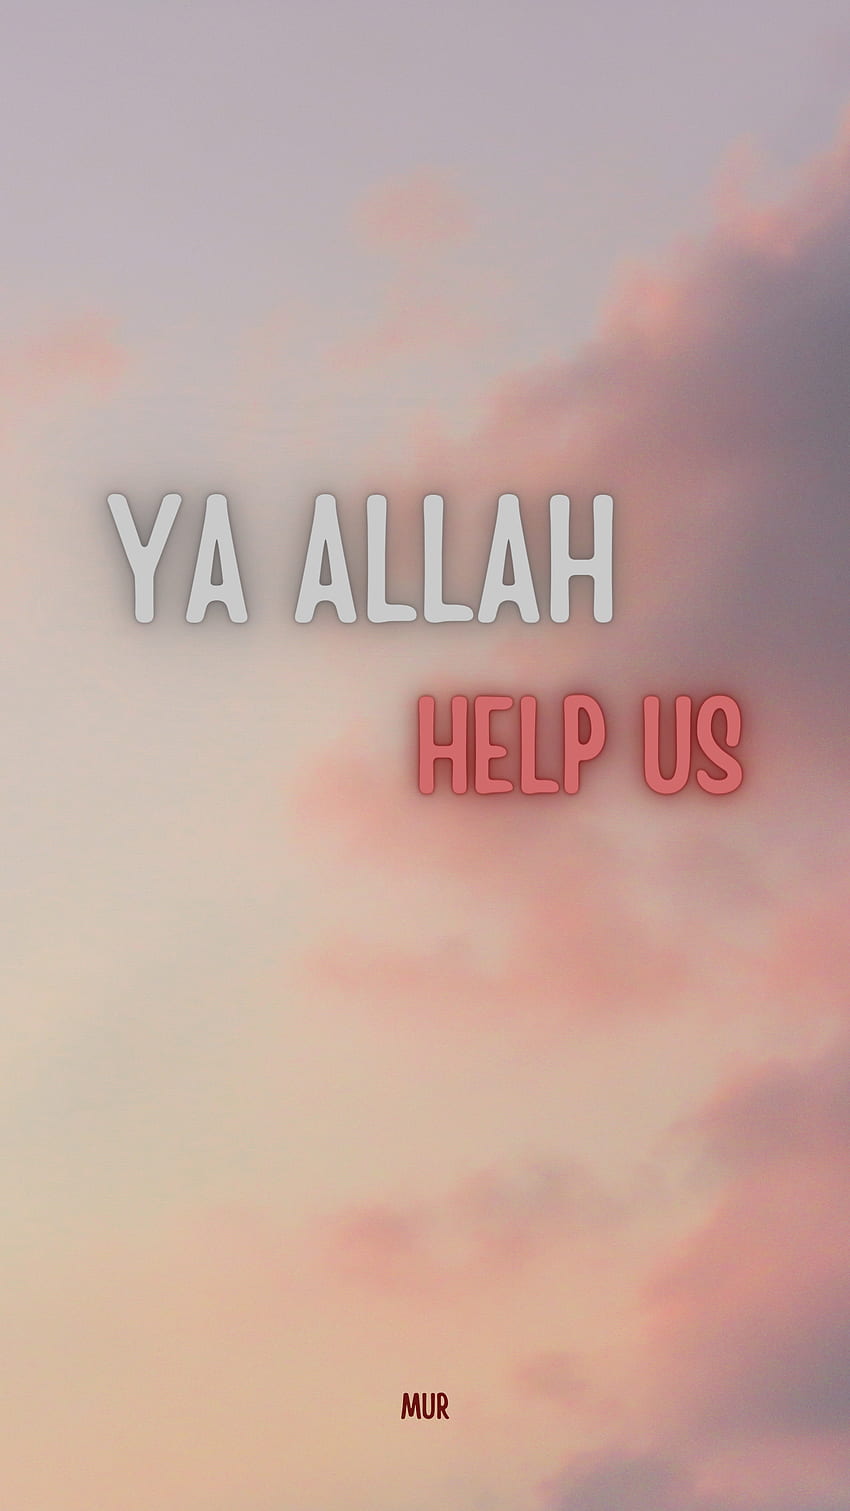 Allah, dua, help, islam, islamic, Ya-Allah, Quran, mur, saying HD phone  wallpaper | Pxfuel